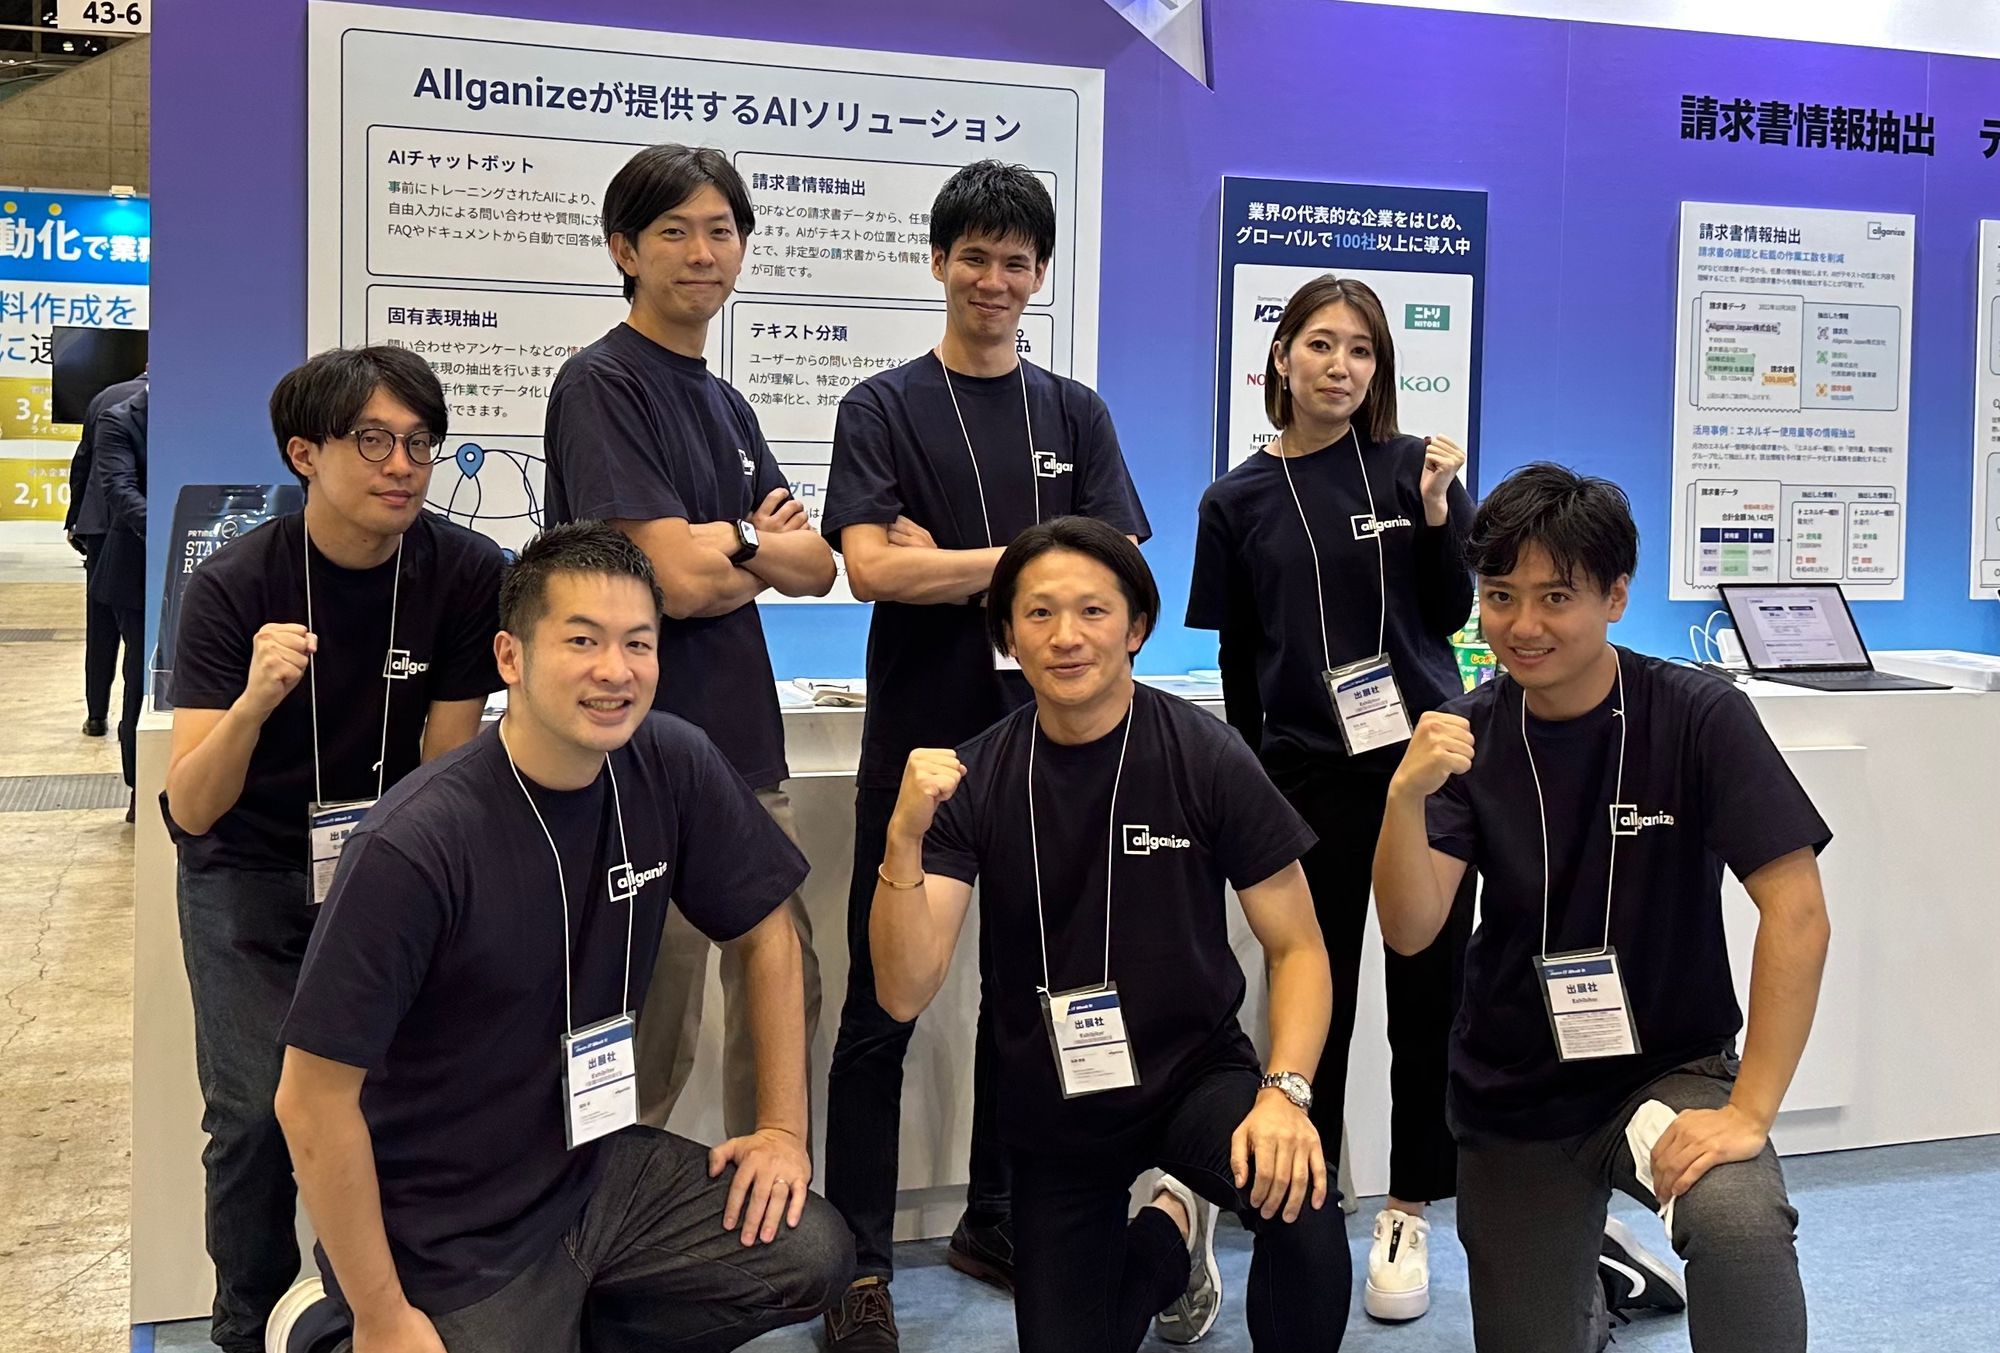 ■イベントレポート■ Japan IT Week「AI・業務自動化展【秋】」、多数のご来場をありがとうございました！